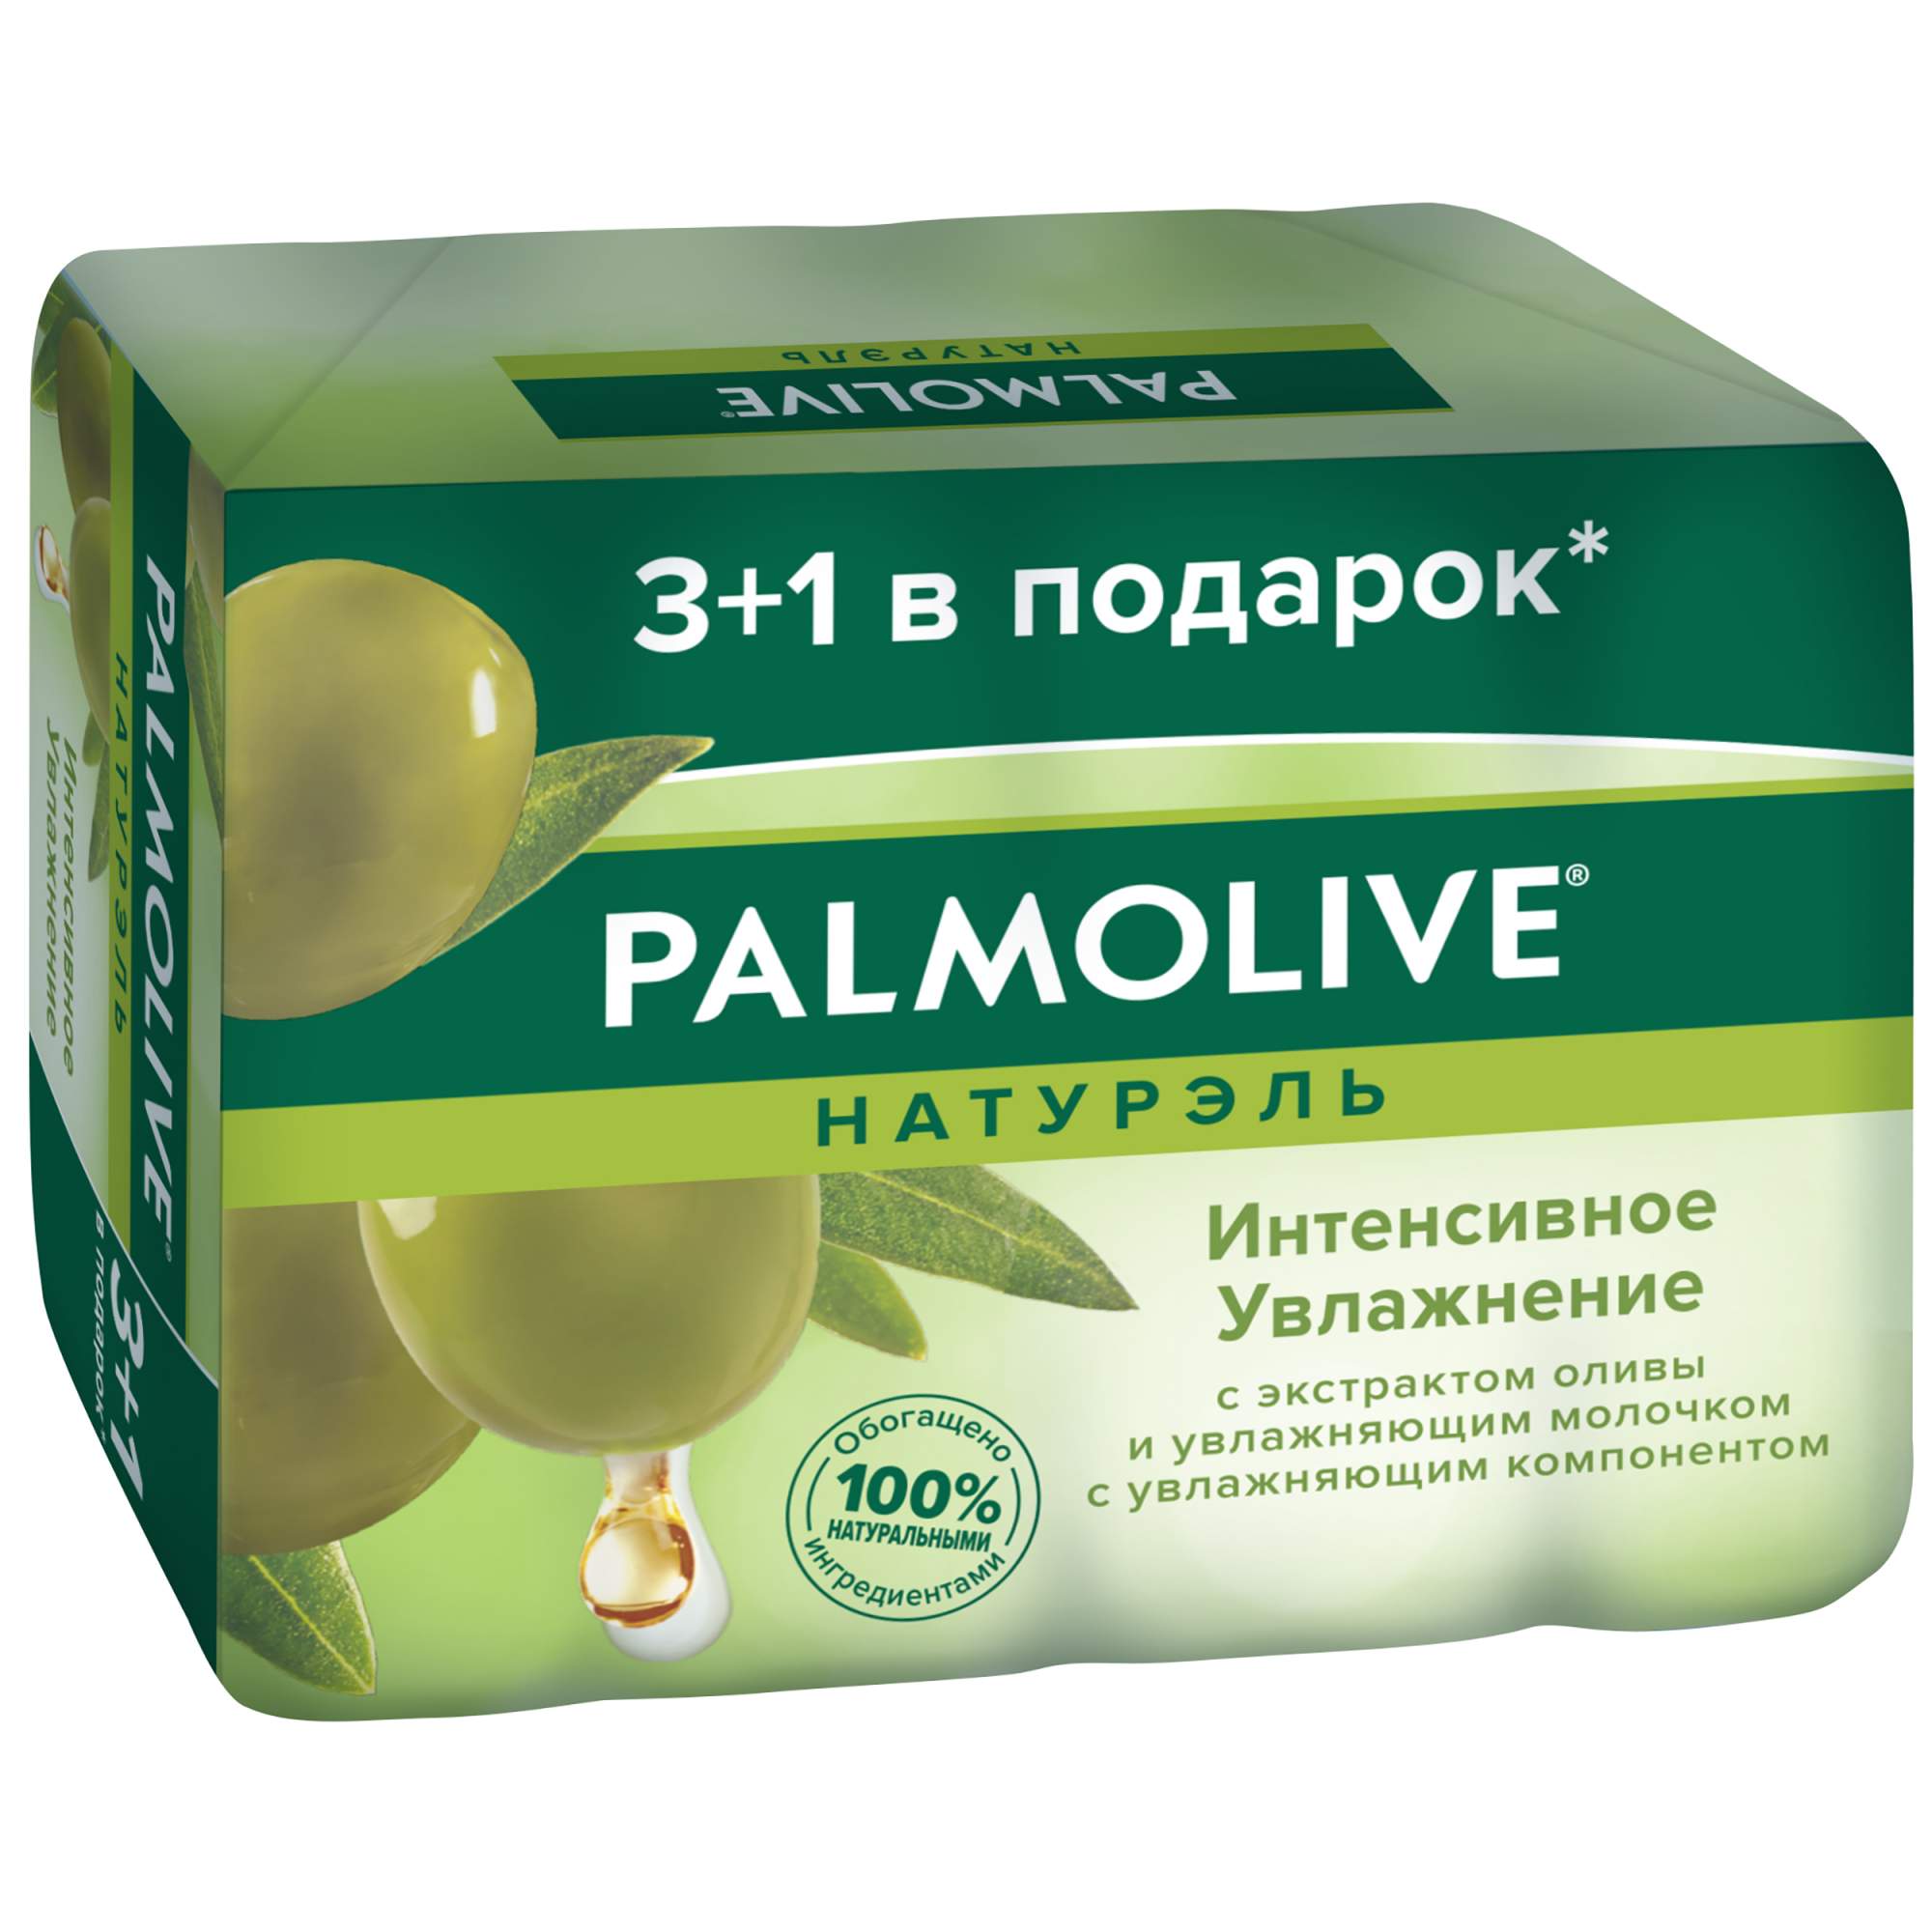 Купить косметическое мыло Palmolive Натурэль Интенсивное увлажнение с экстрактом оливы 4x90 г, цены на Мегамаркет | Артикул: 100002568438